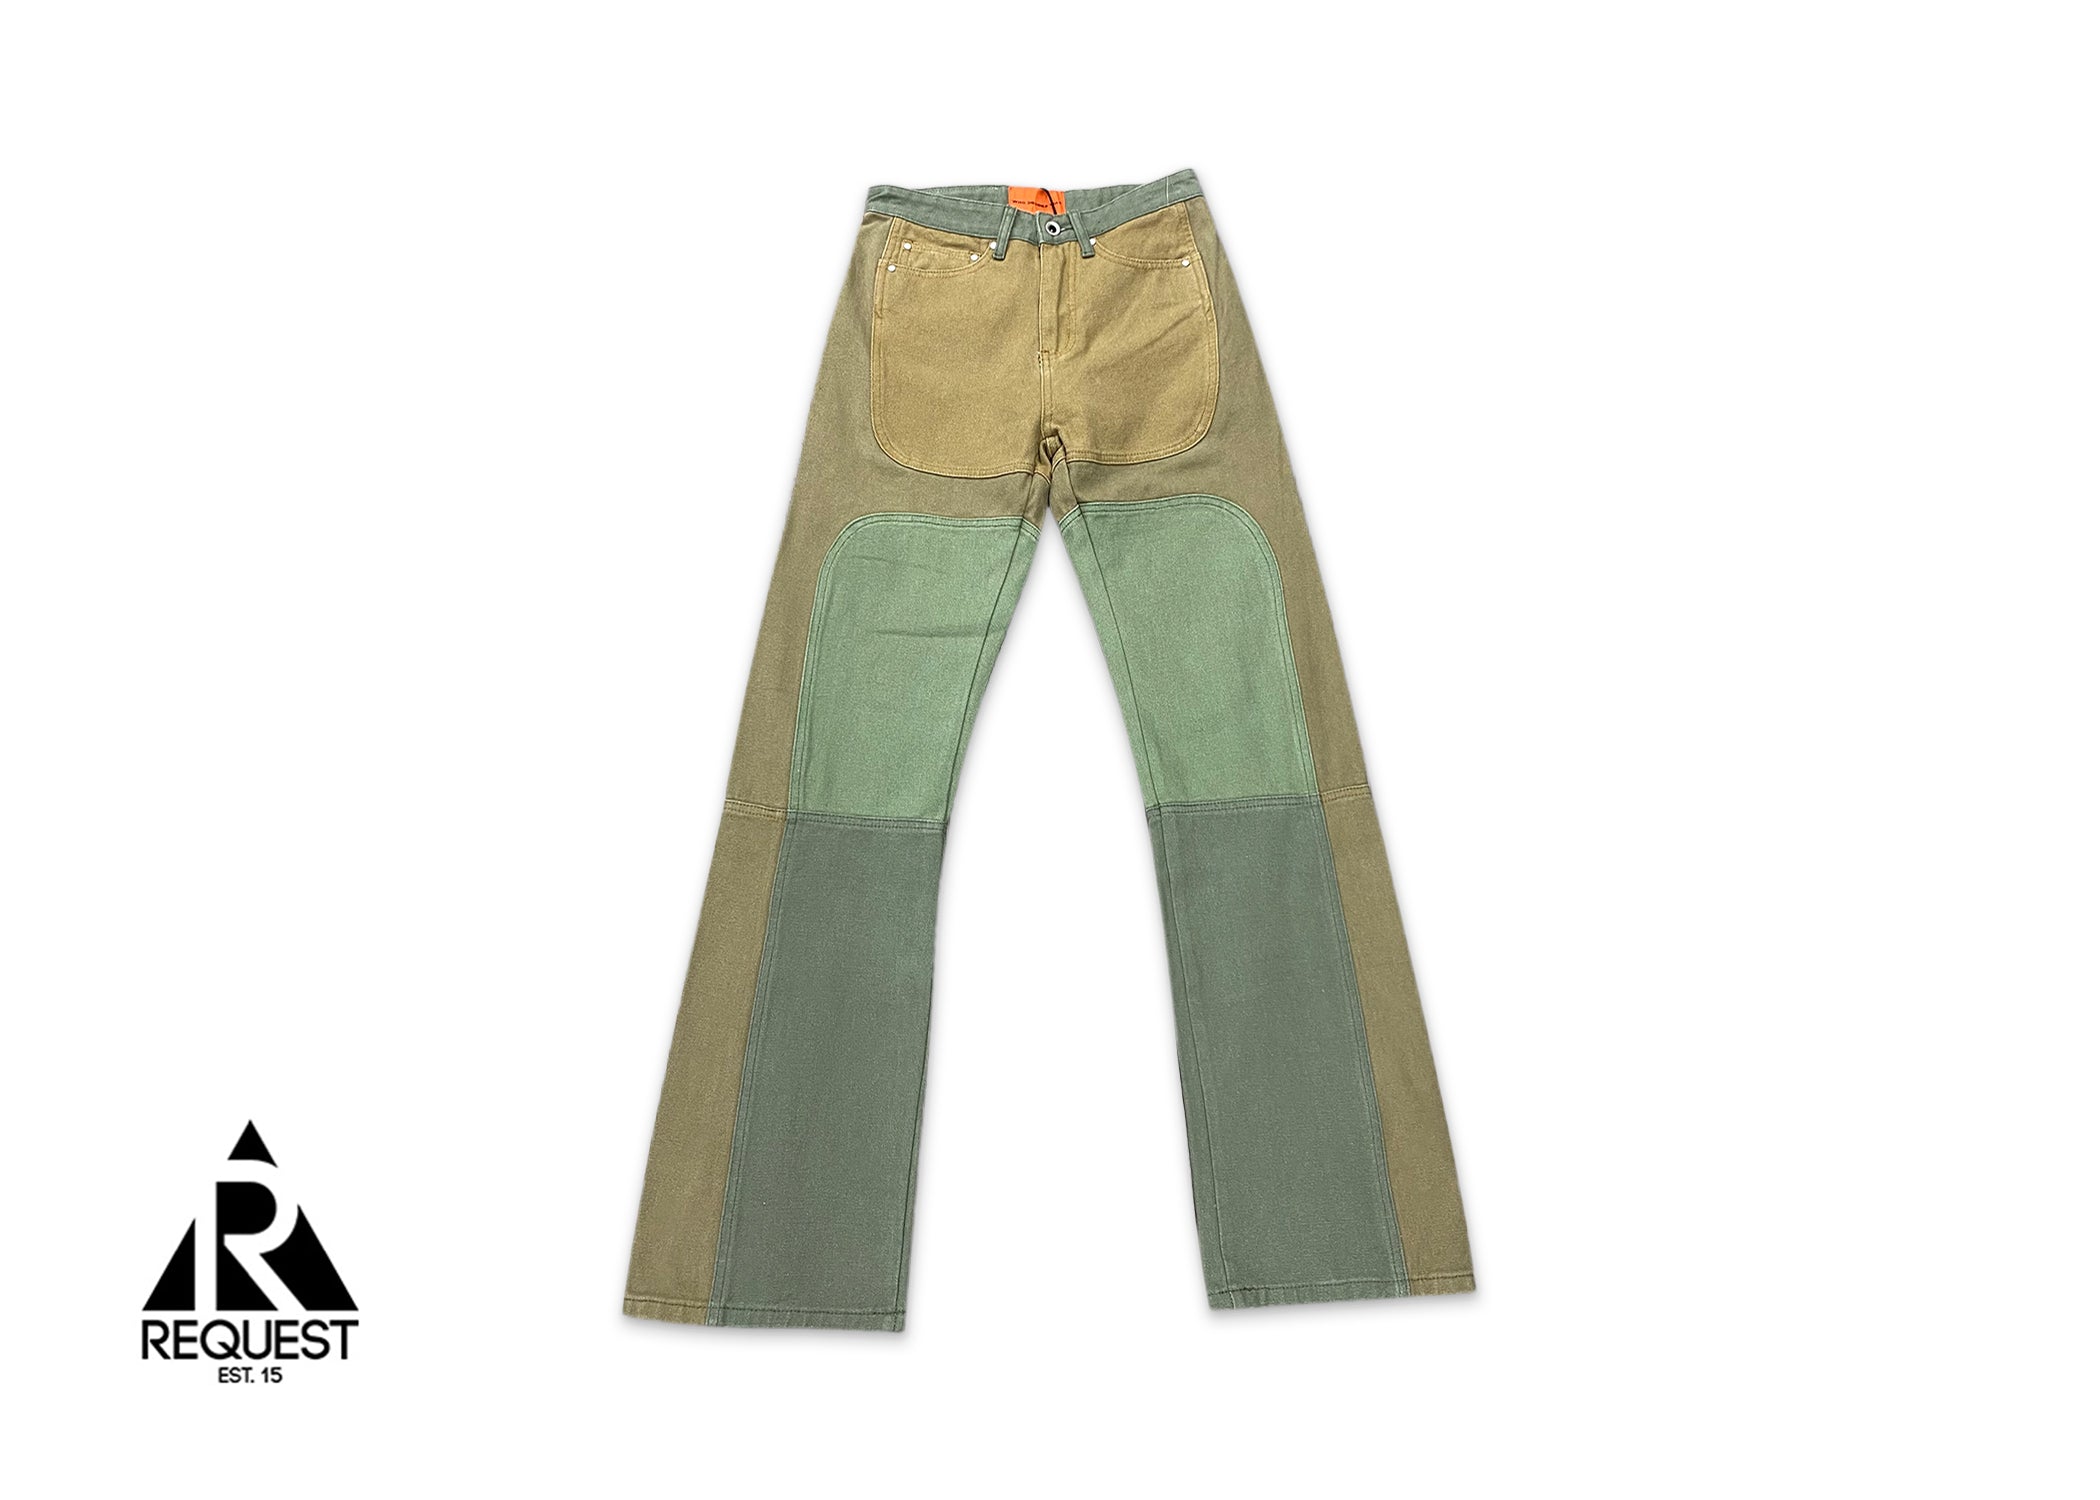 MRDR BRAVADO Who Decides War Upcycled Denim Jeans "Green/Brown"